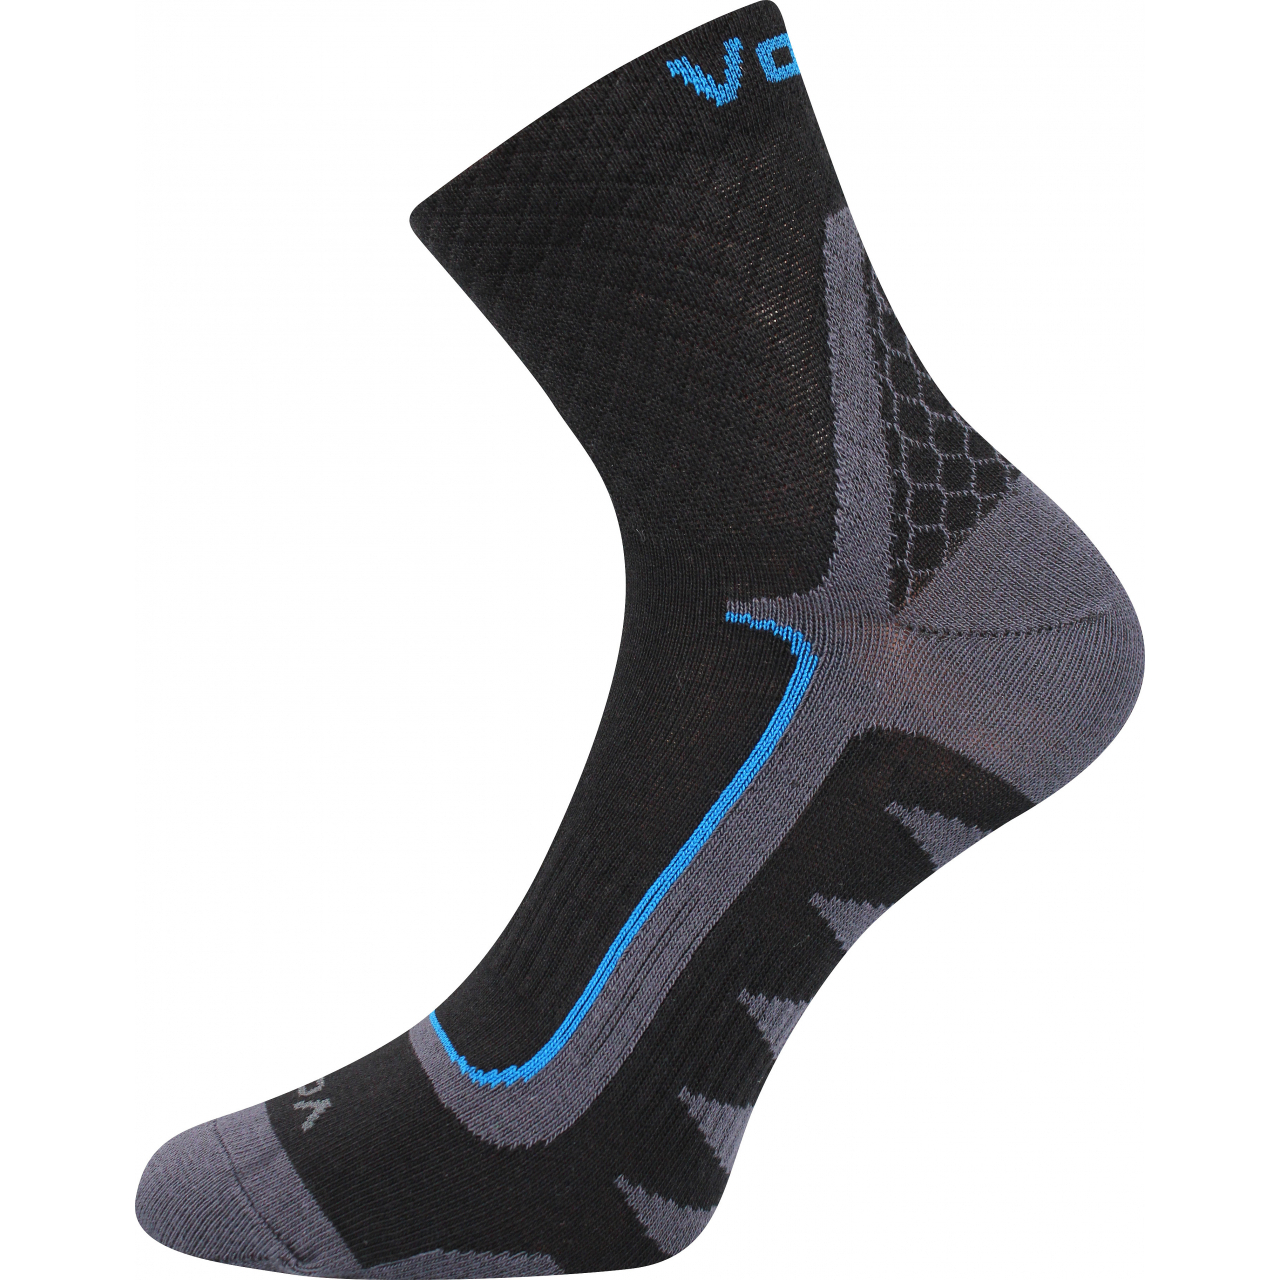 Ponožky sportovní unisex Voxx Kryptox - černé-modré, 43-46